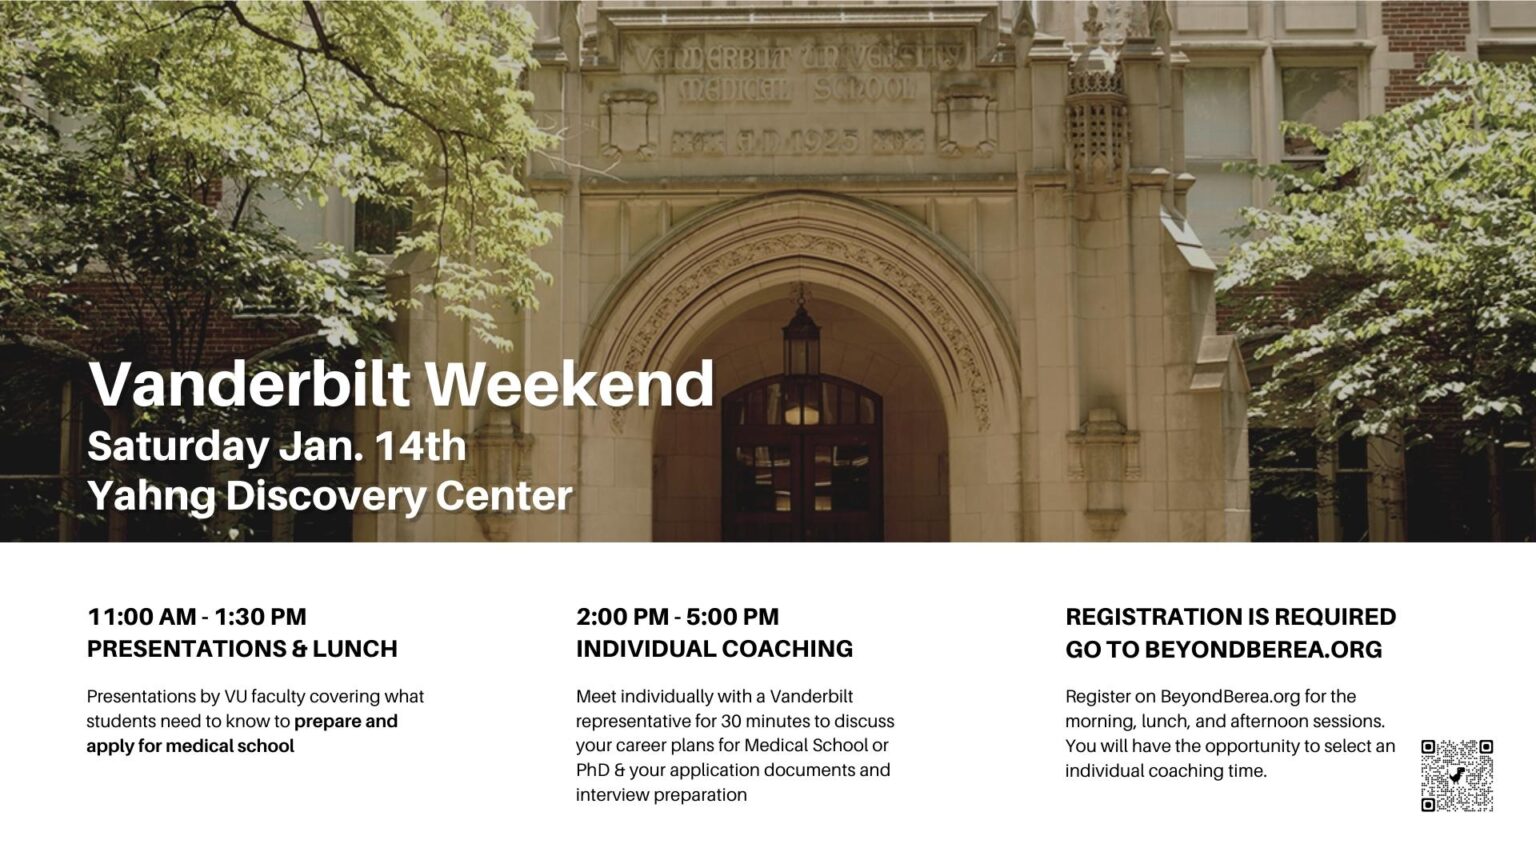 Vanderbilt Weekend Berea College Calendar